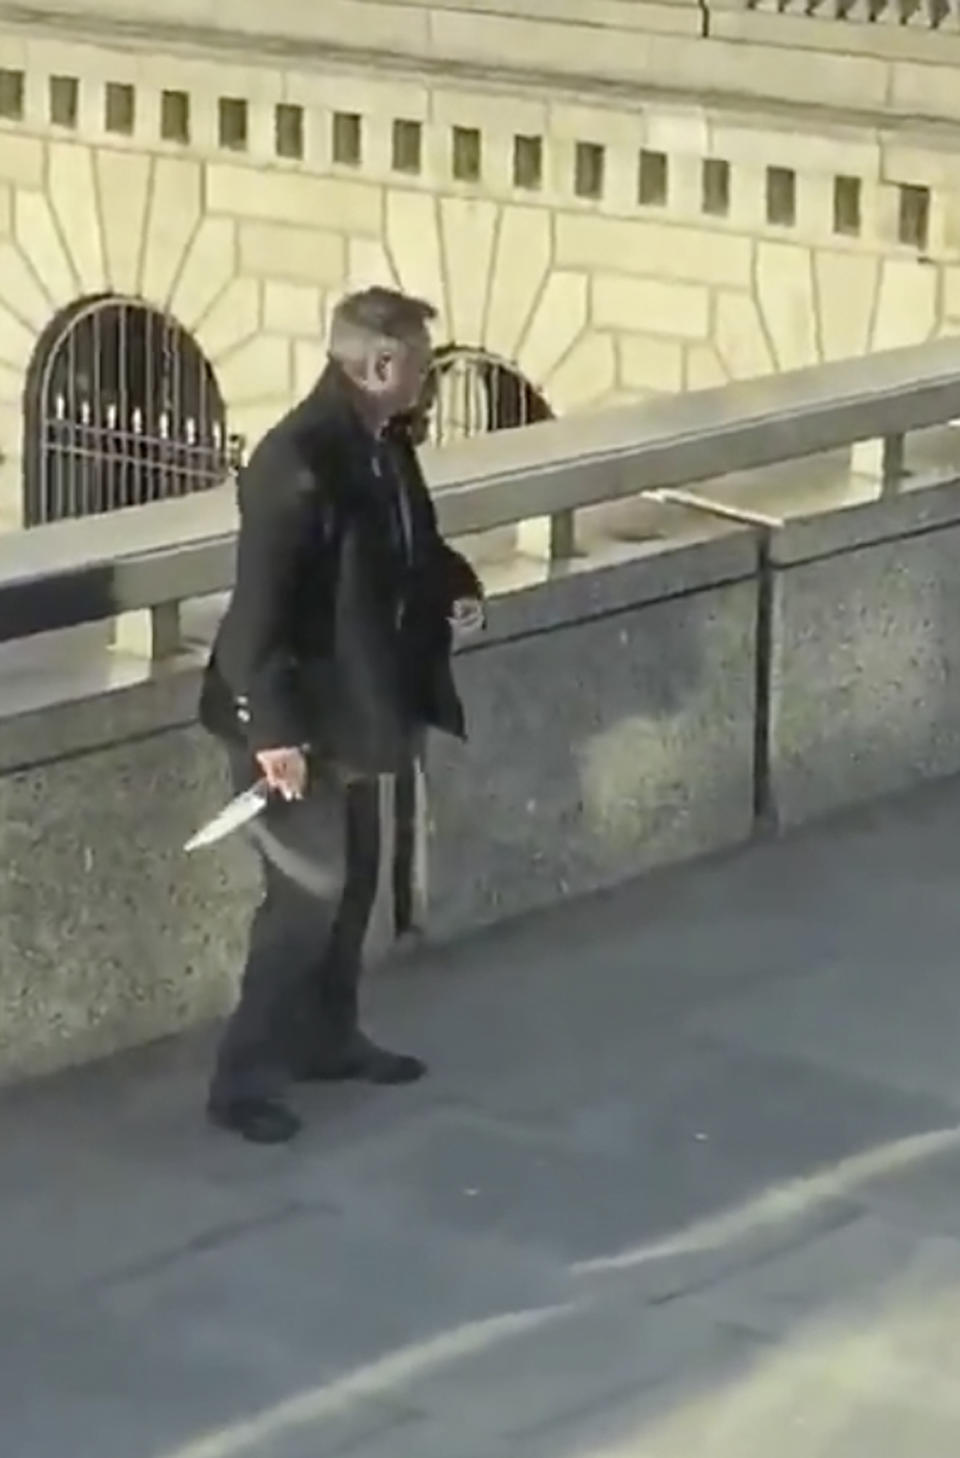 Man wielding knife taken from attacker who shot dead two innocent people on London Bridge.